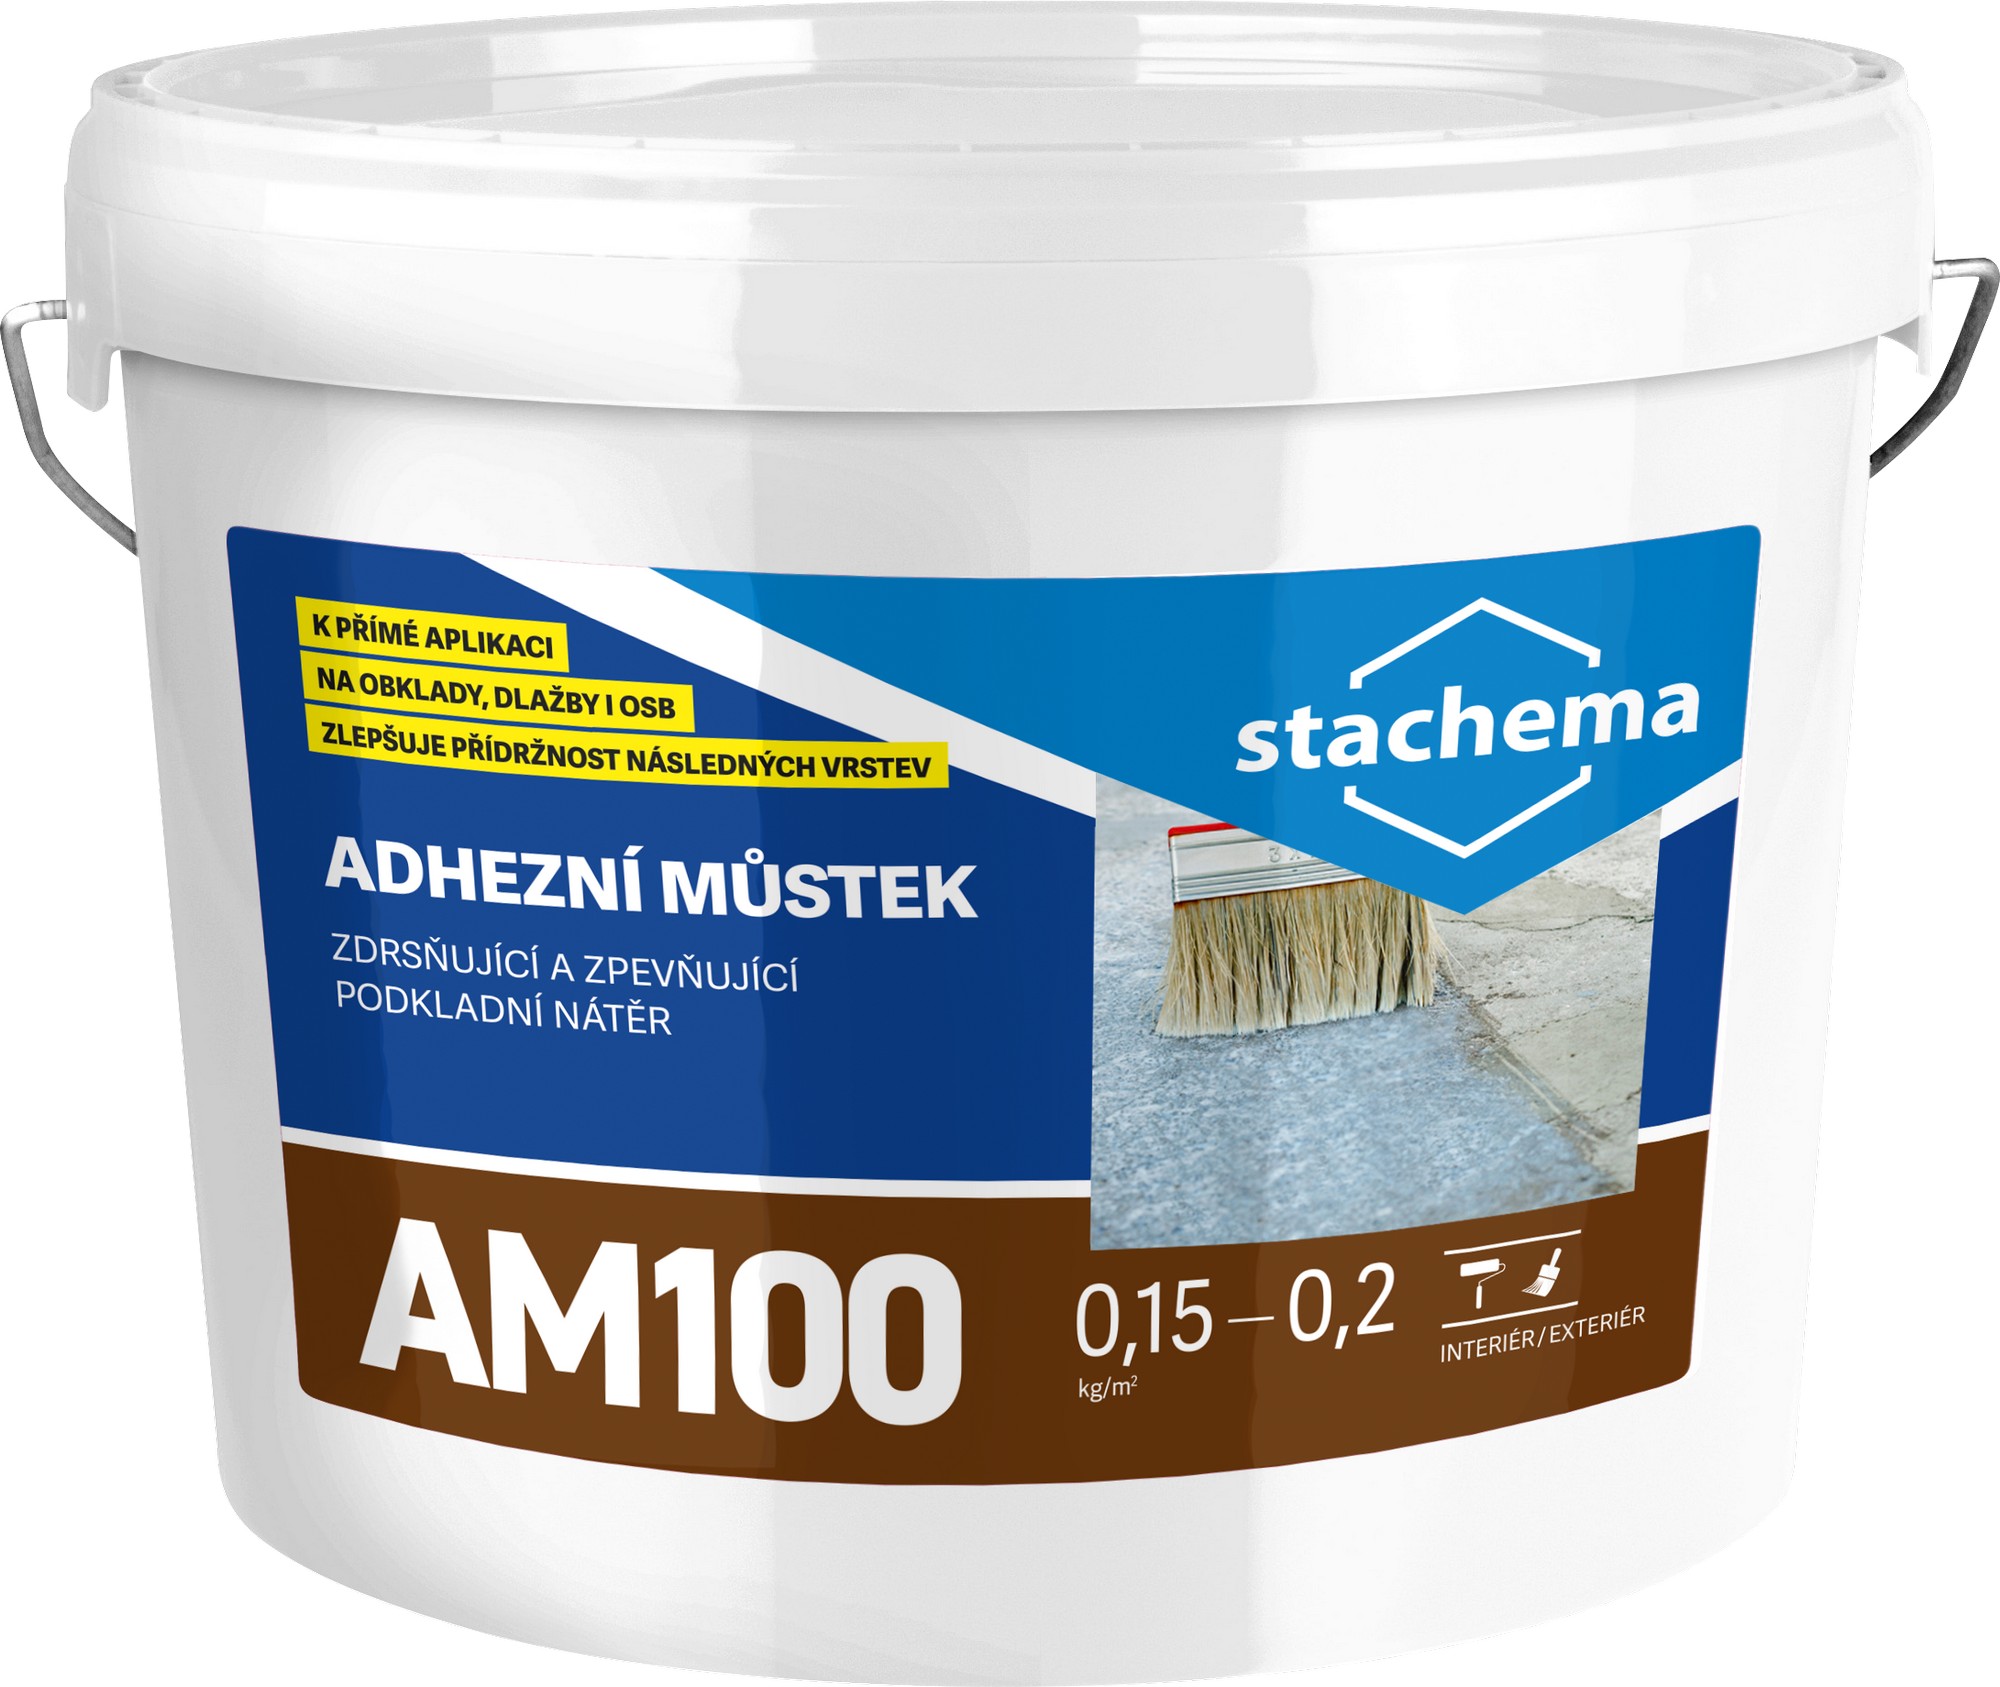 Můstek adhezní Stachema AM100 1 kg